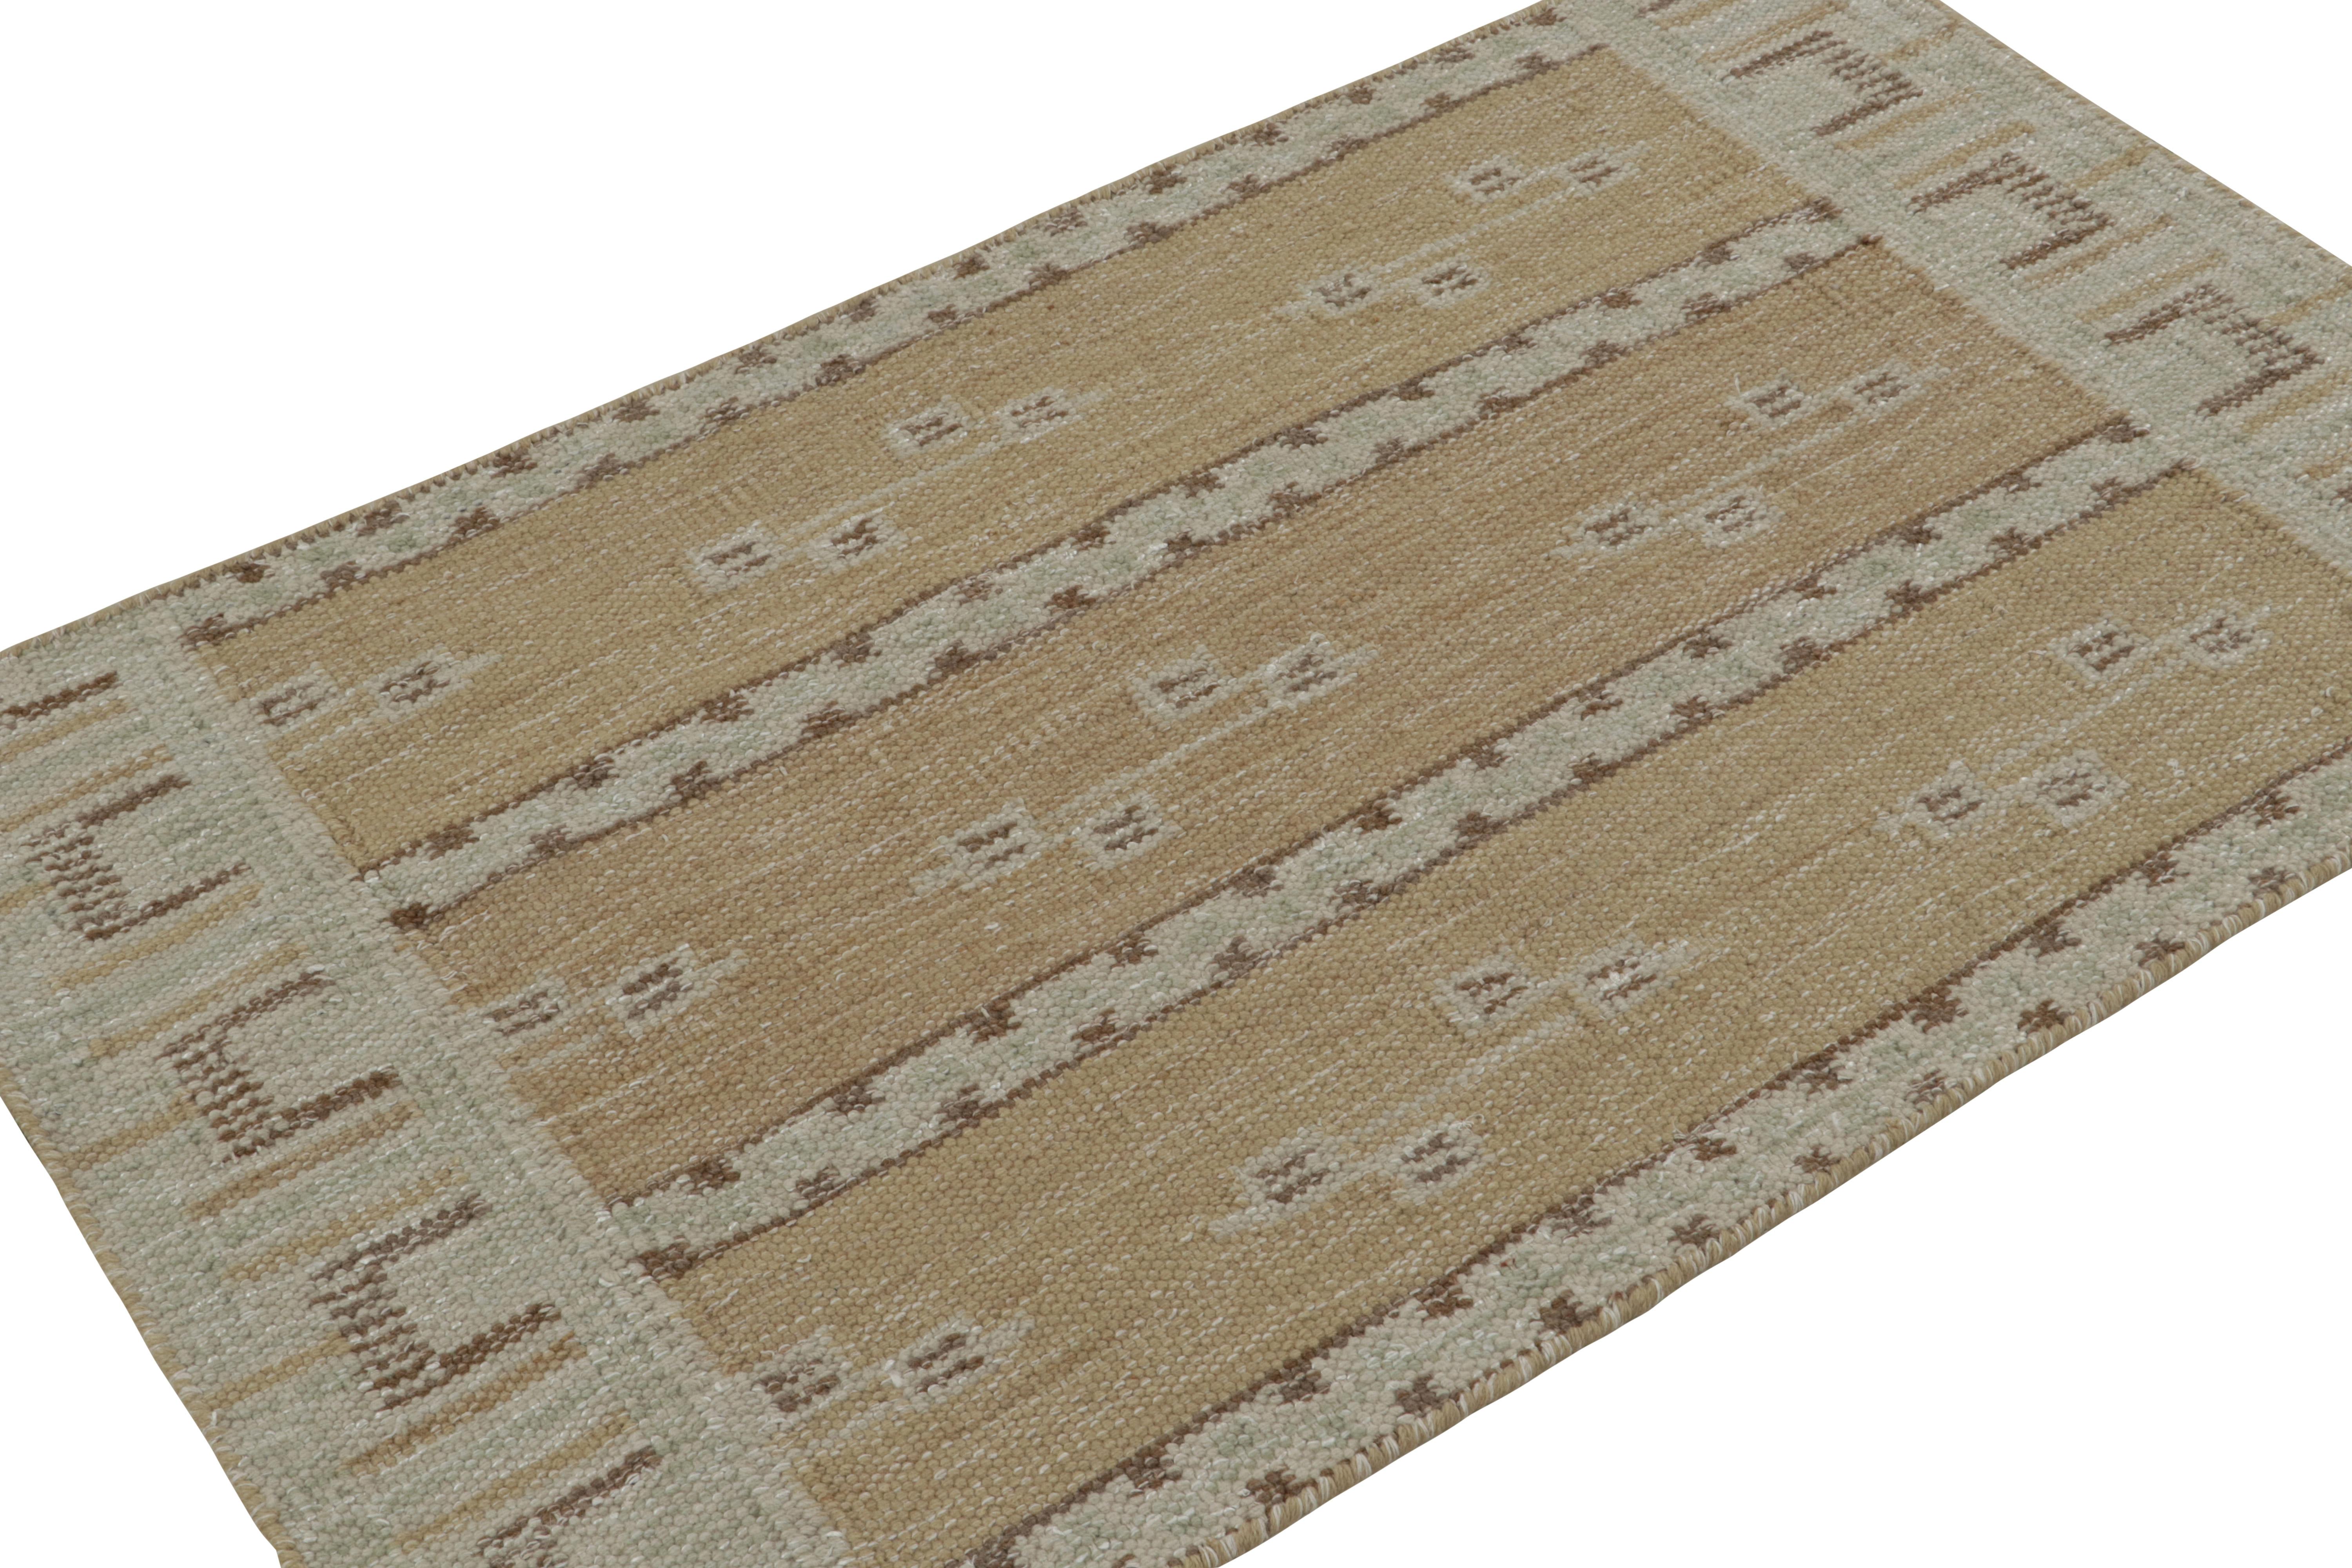 Dieser 3x5-Kilim-Teppich stammt aus der Flachgewebelinie der skandinavischen Teppichkollektion von Rug & Kilim. Das aus Wolle, Baumwolle und natürlichen Garnen handgewebte Design ist eine moderne Interpretation der Teppiche Rollakan und Rya im